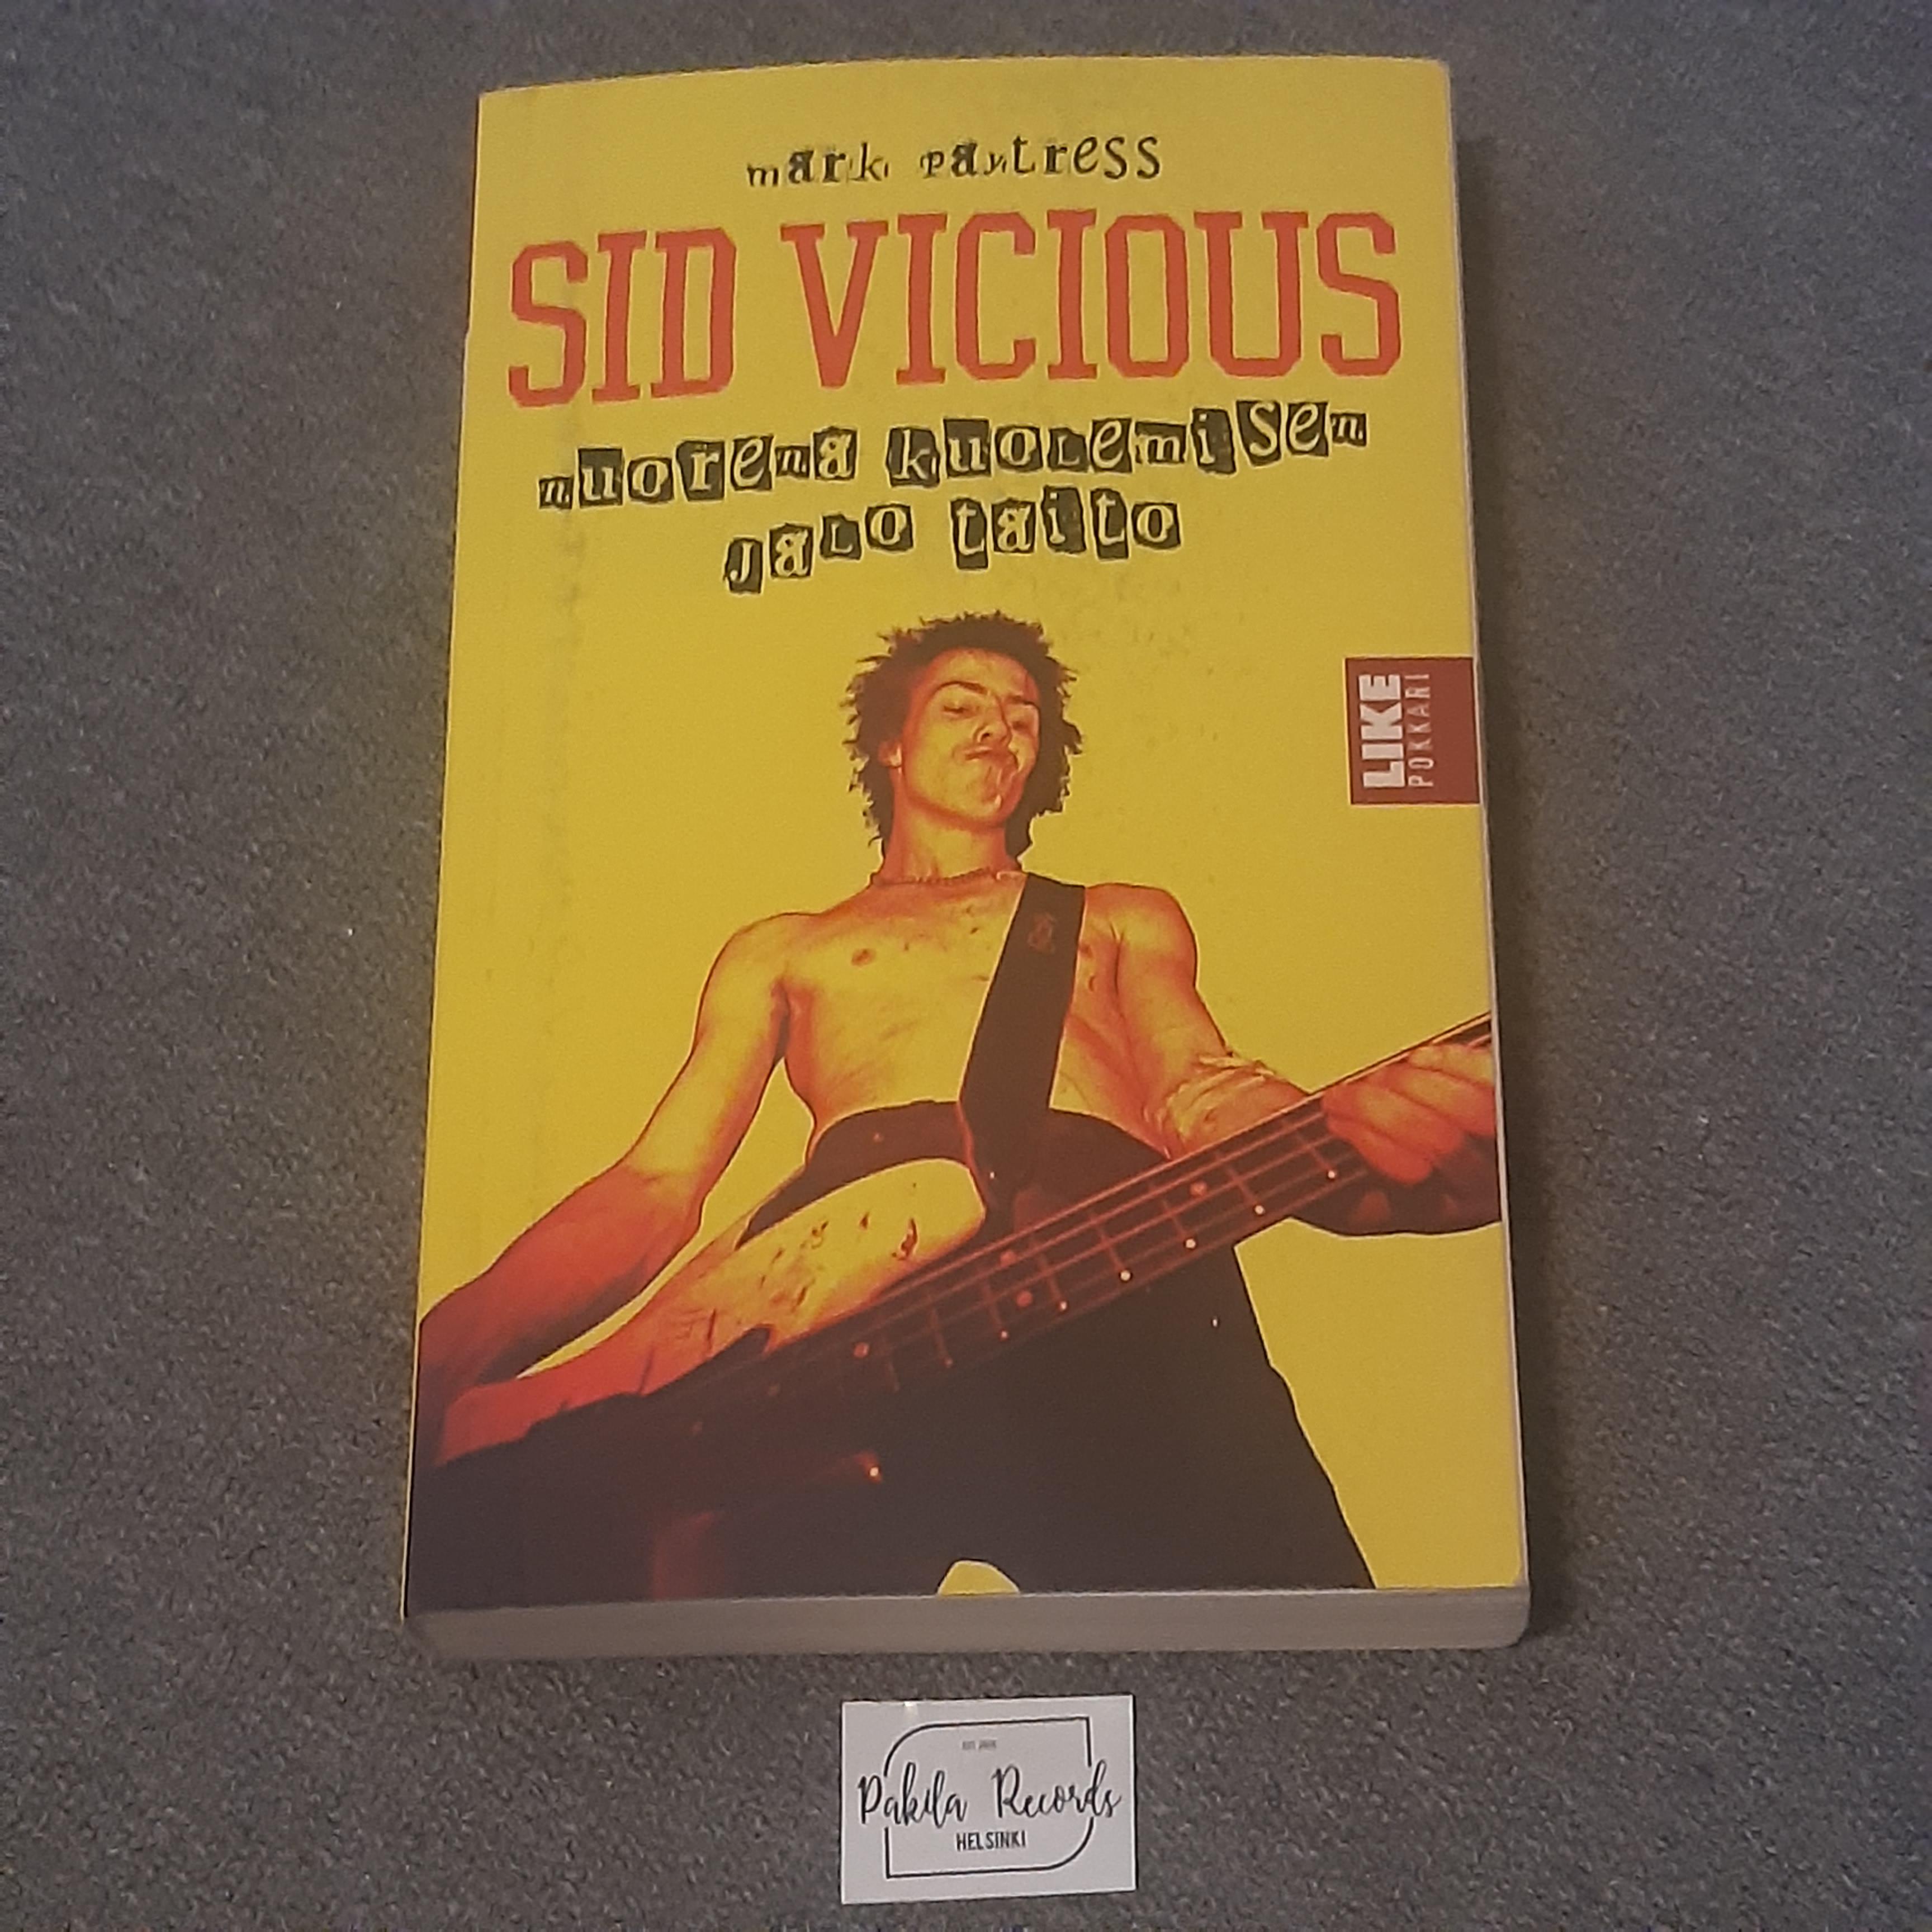 Sid Vicious, Nuorena kuolemisen jalo taito - Mark Paytress - Kirja (käytetty)